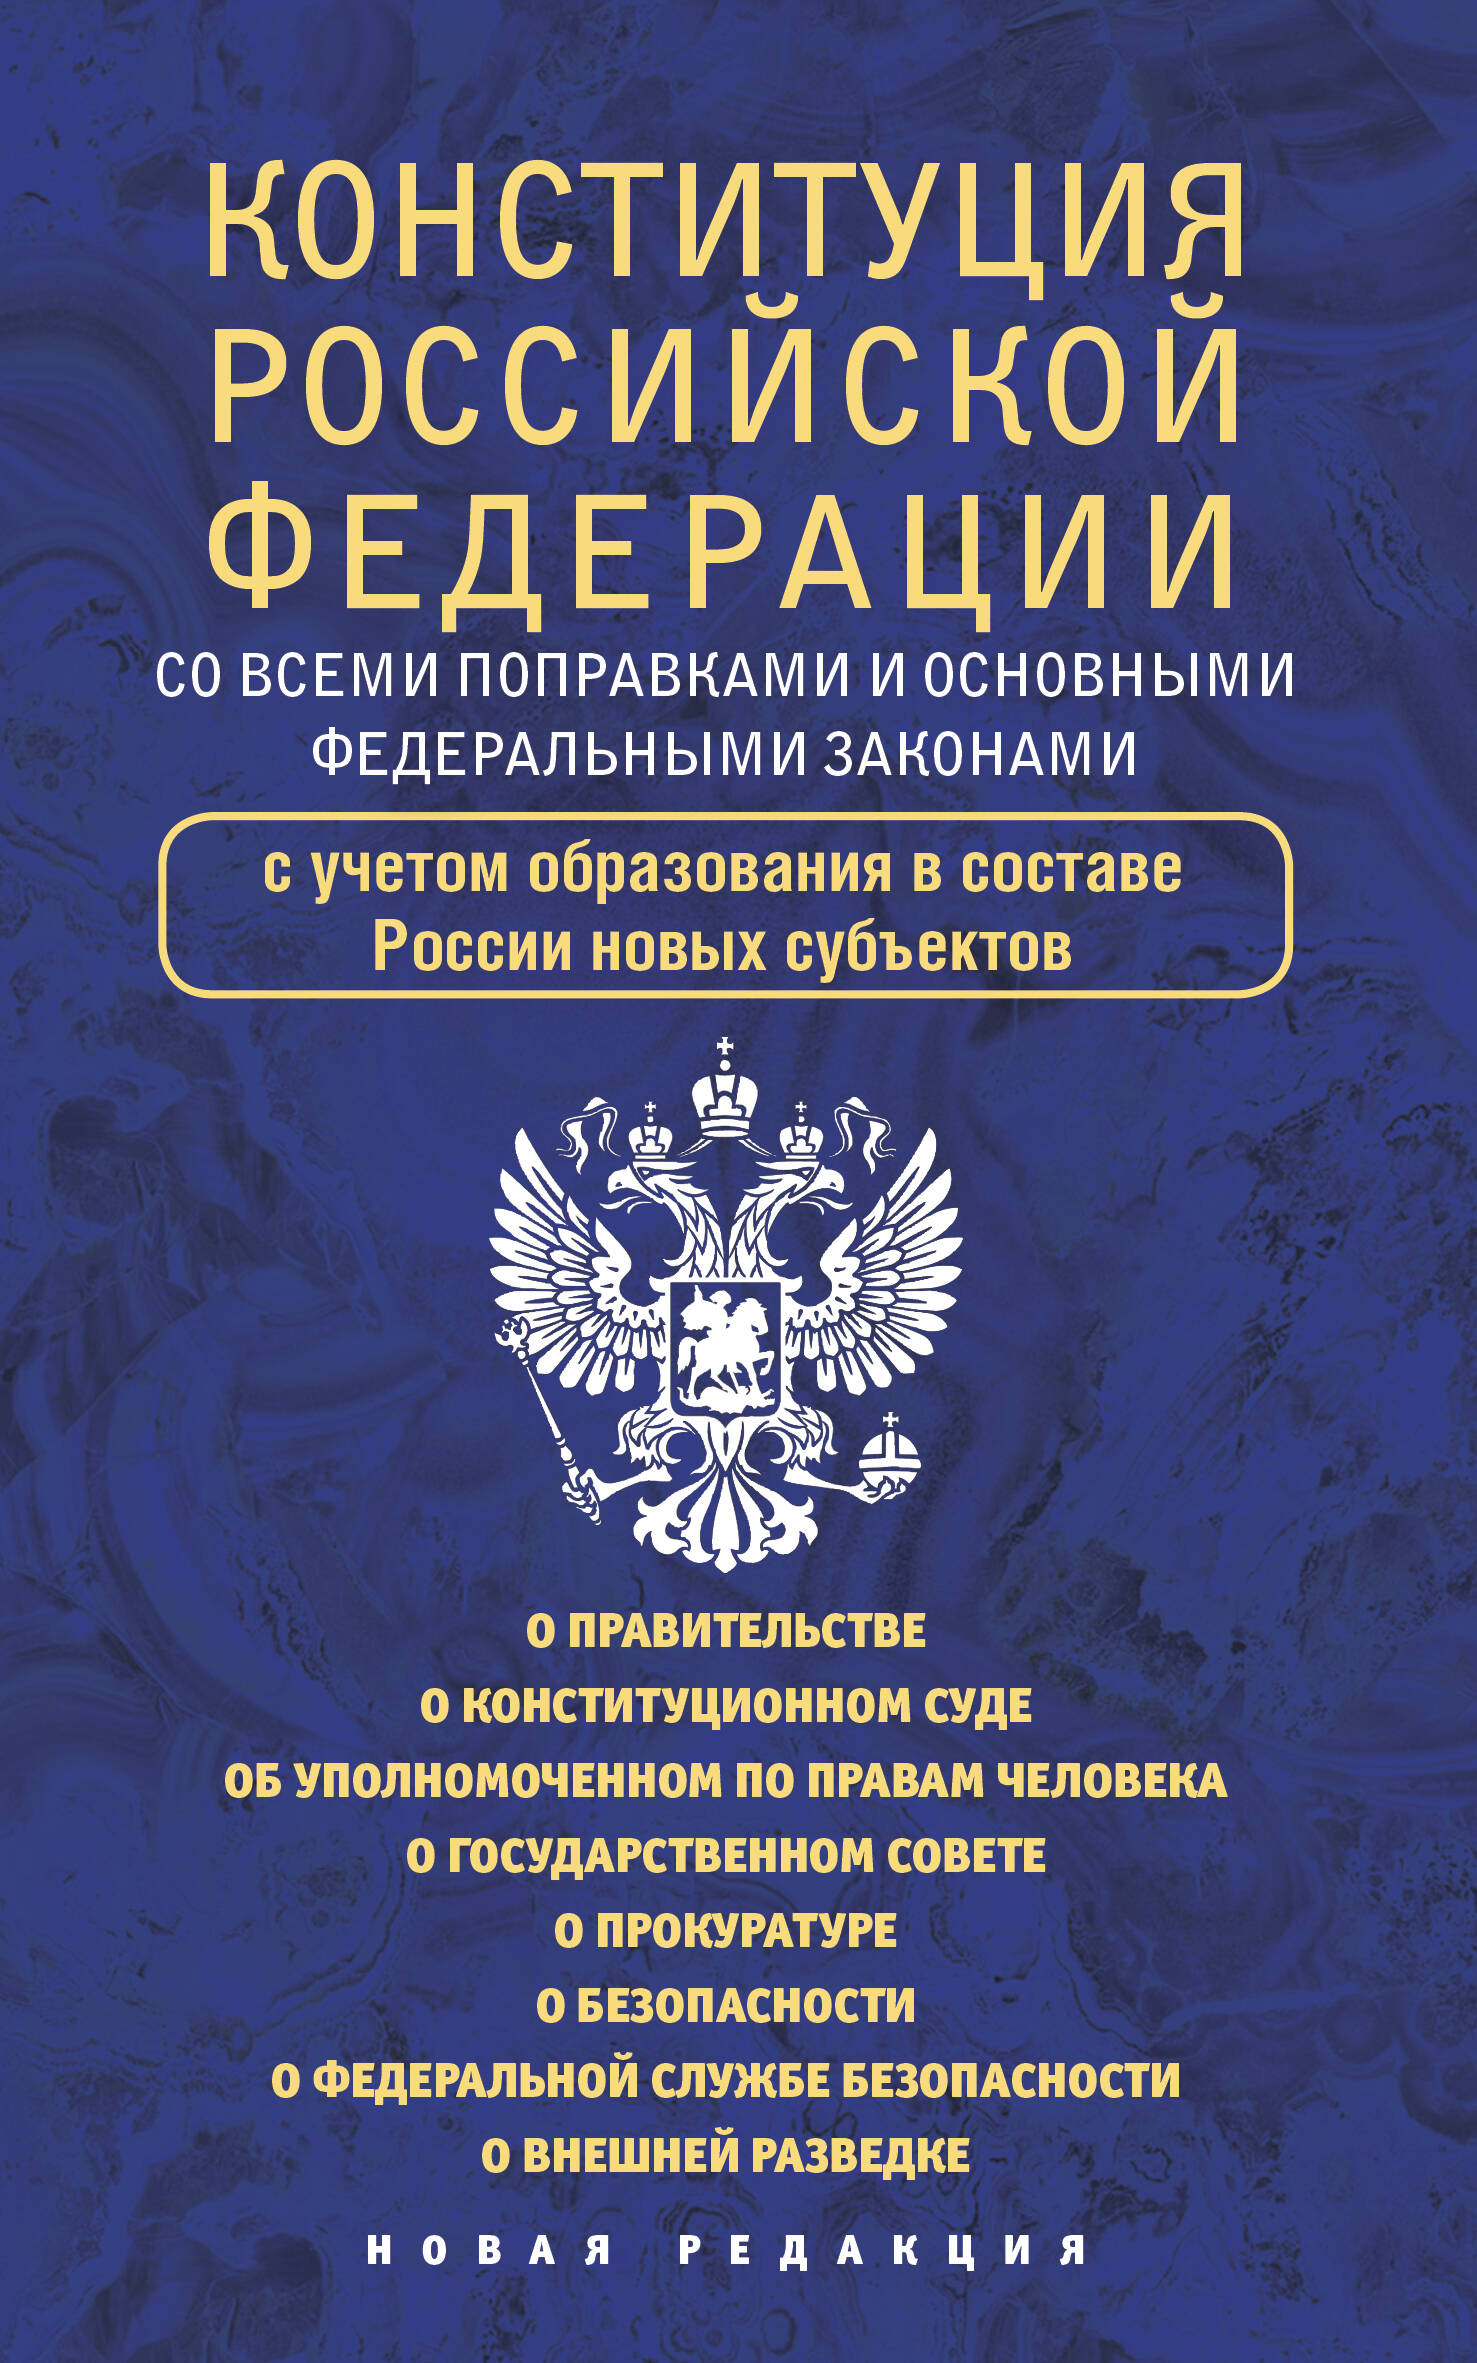 фкз о конституционном суде рф Конституция Российской Федерации со всеми поправками и основными федеральными законами